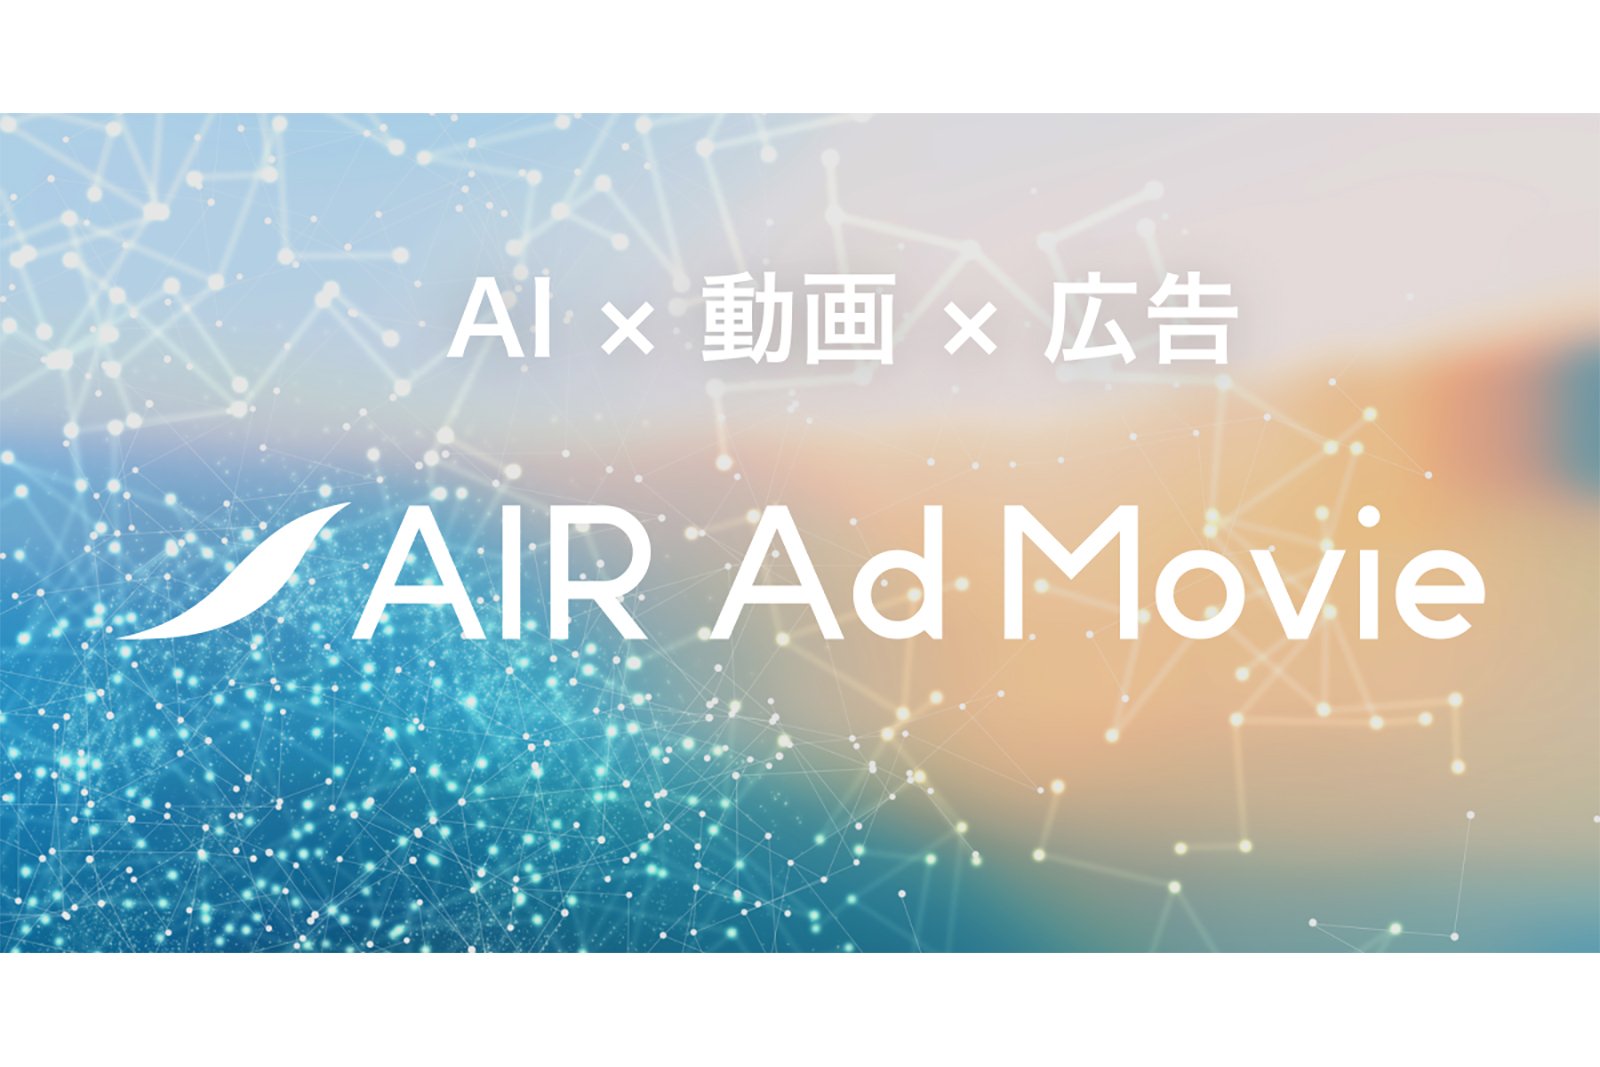 AIR Ad Movie